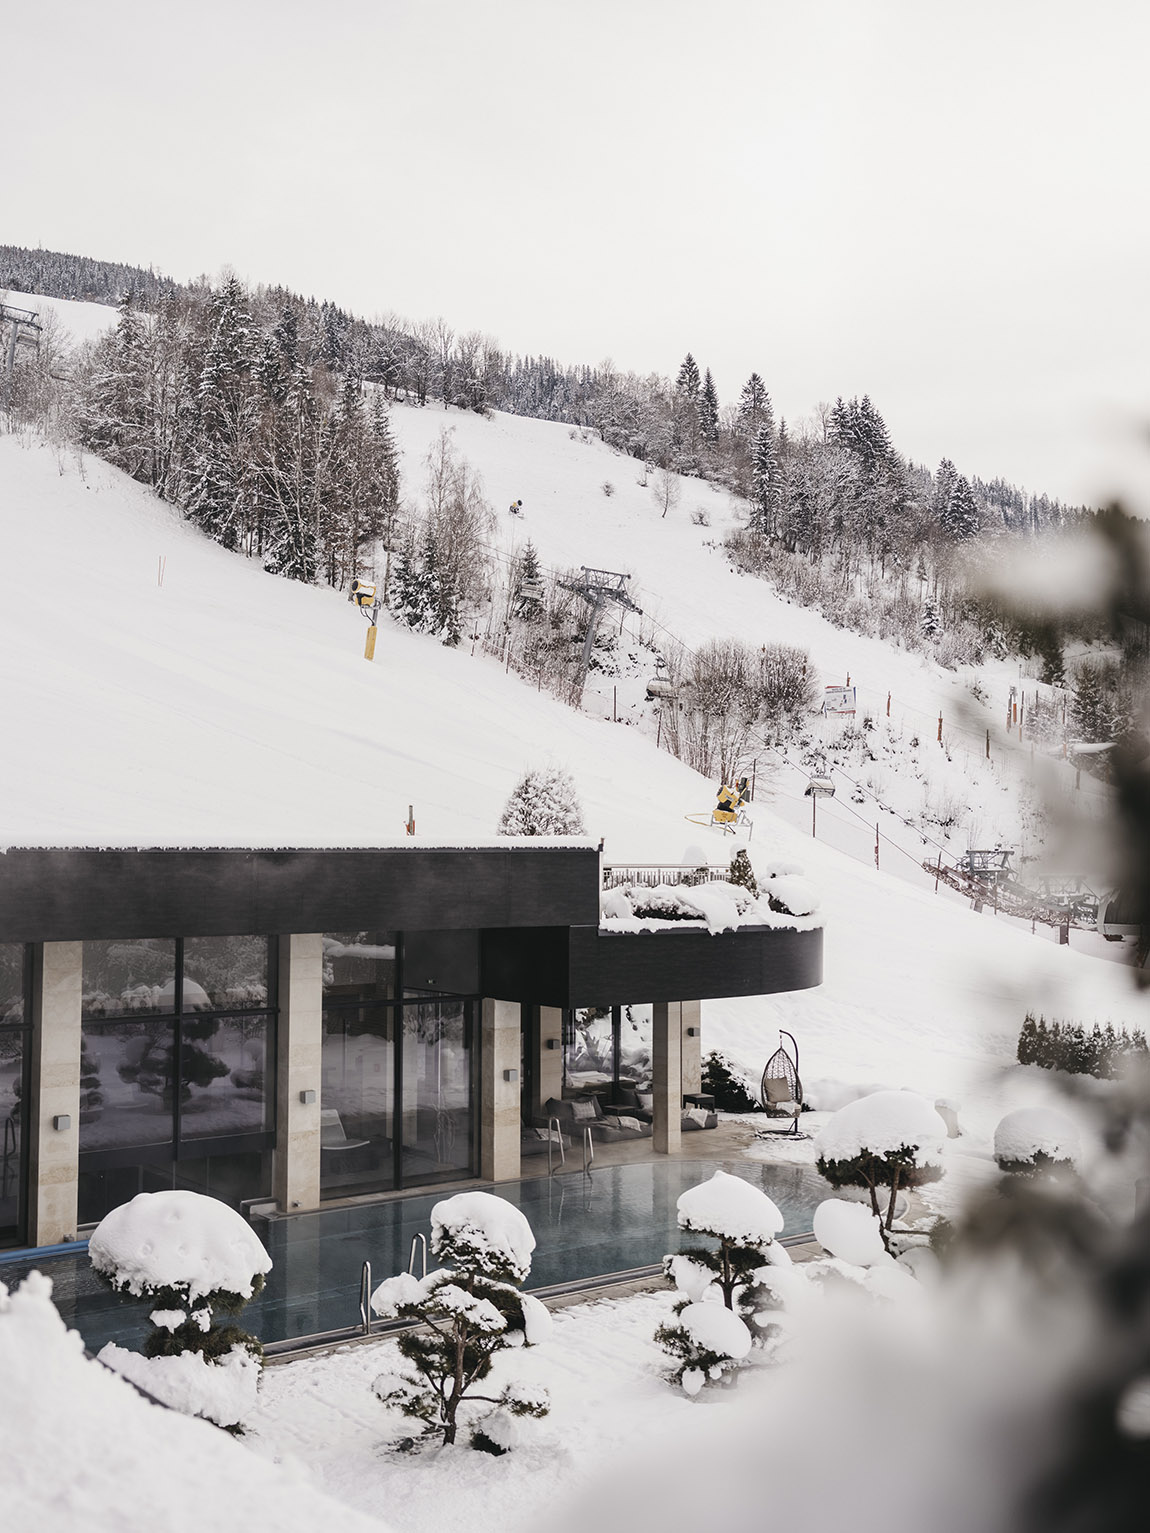 Sonnhof: A unique blend of winter sports luxury